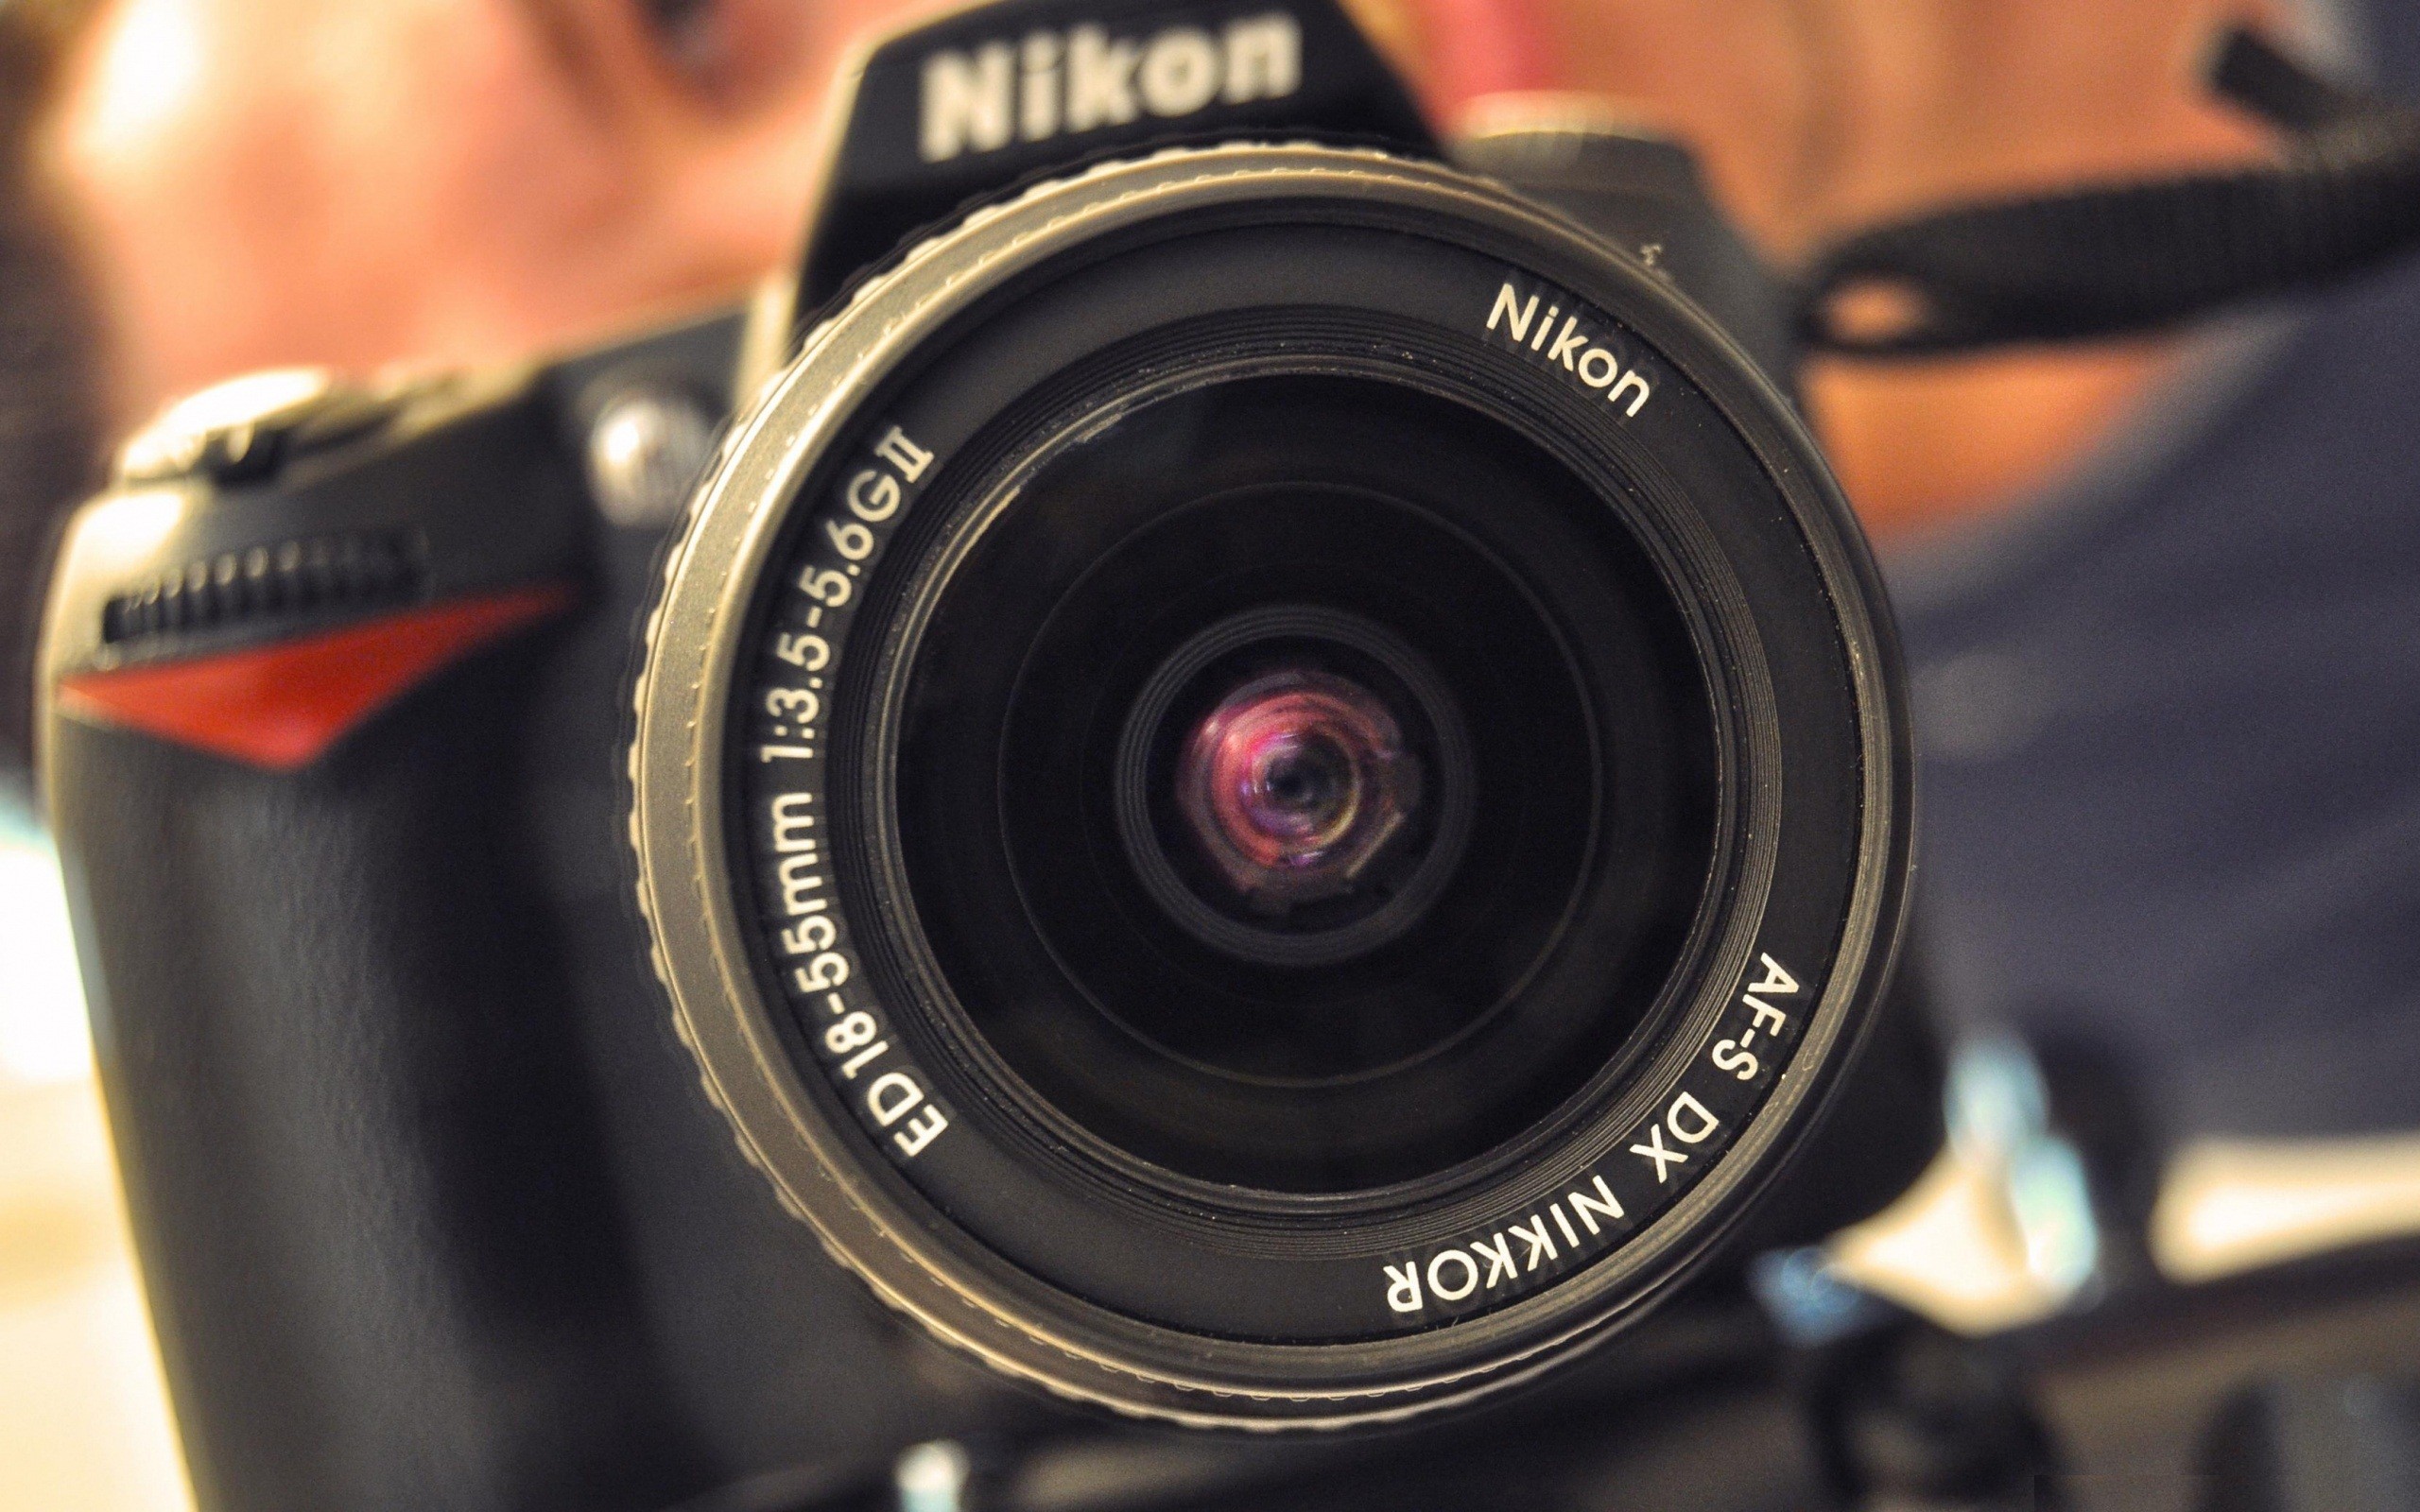 nikon壁紙hd,カメラレンズ,カメラ,レンズ,カメラを向けて撮影する,ミラーレス一眼カメラ